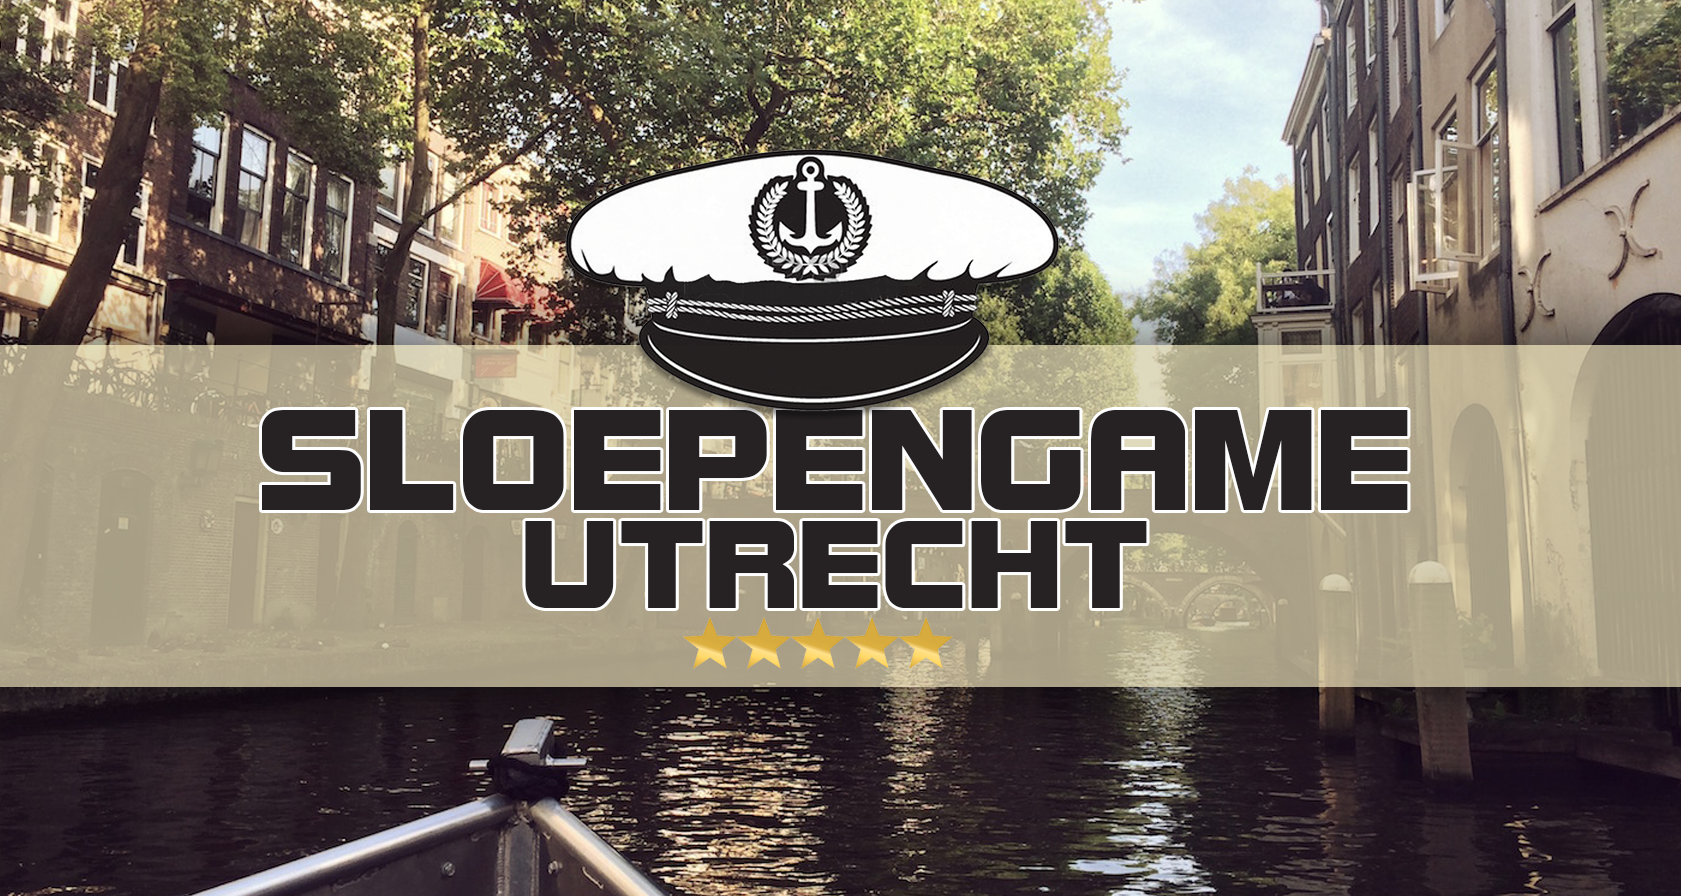 Vaararrangementen vrijgezellendag: Sloepen Game Utrecht